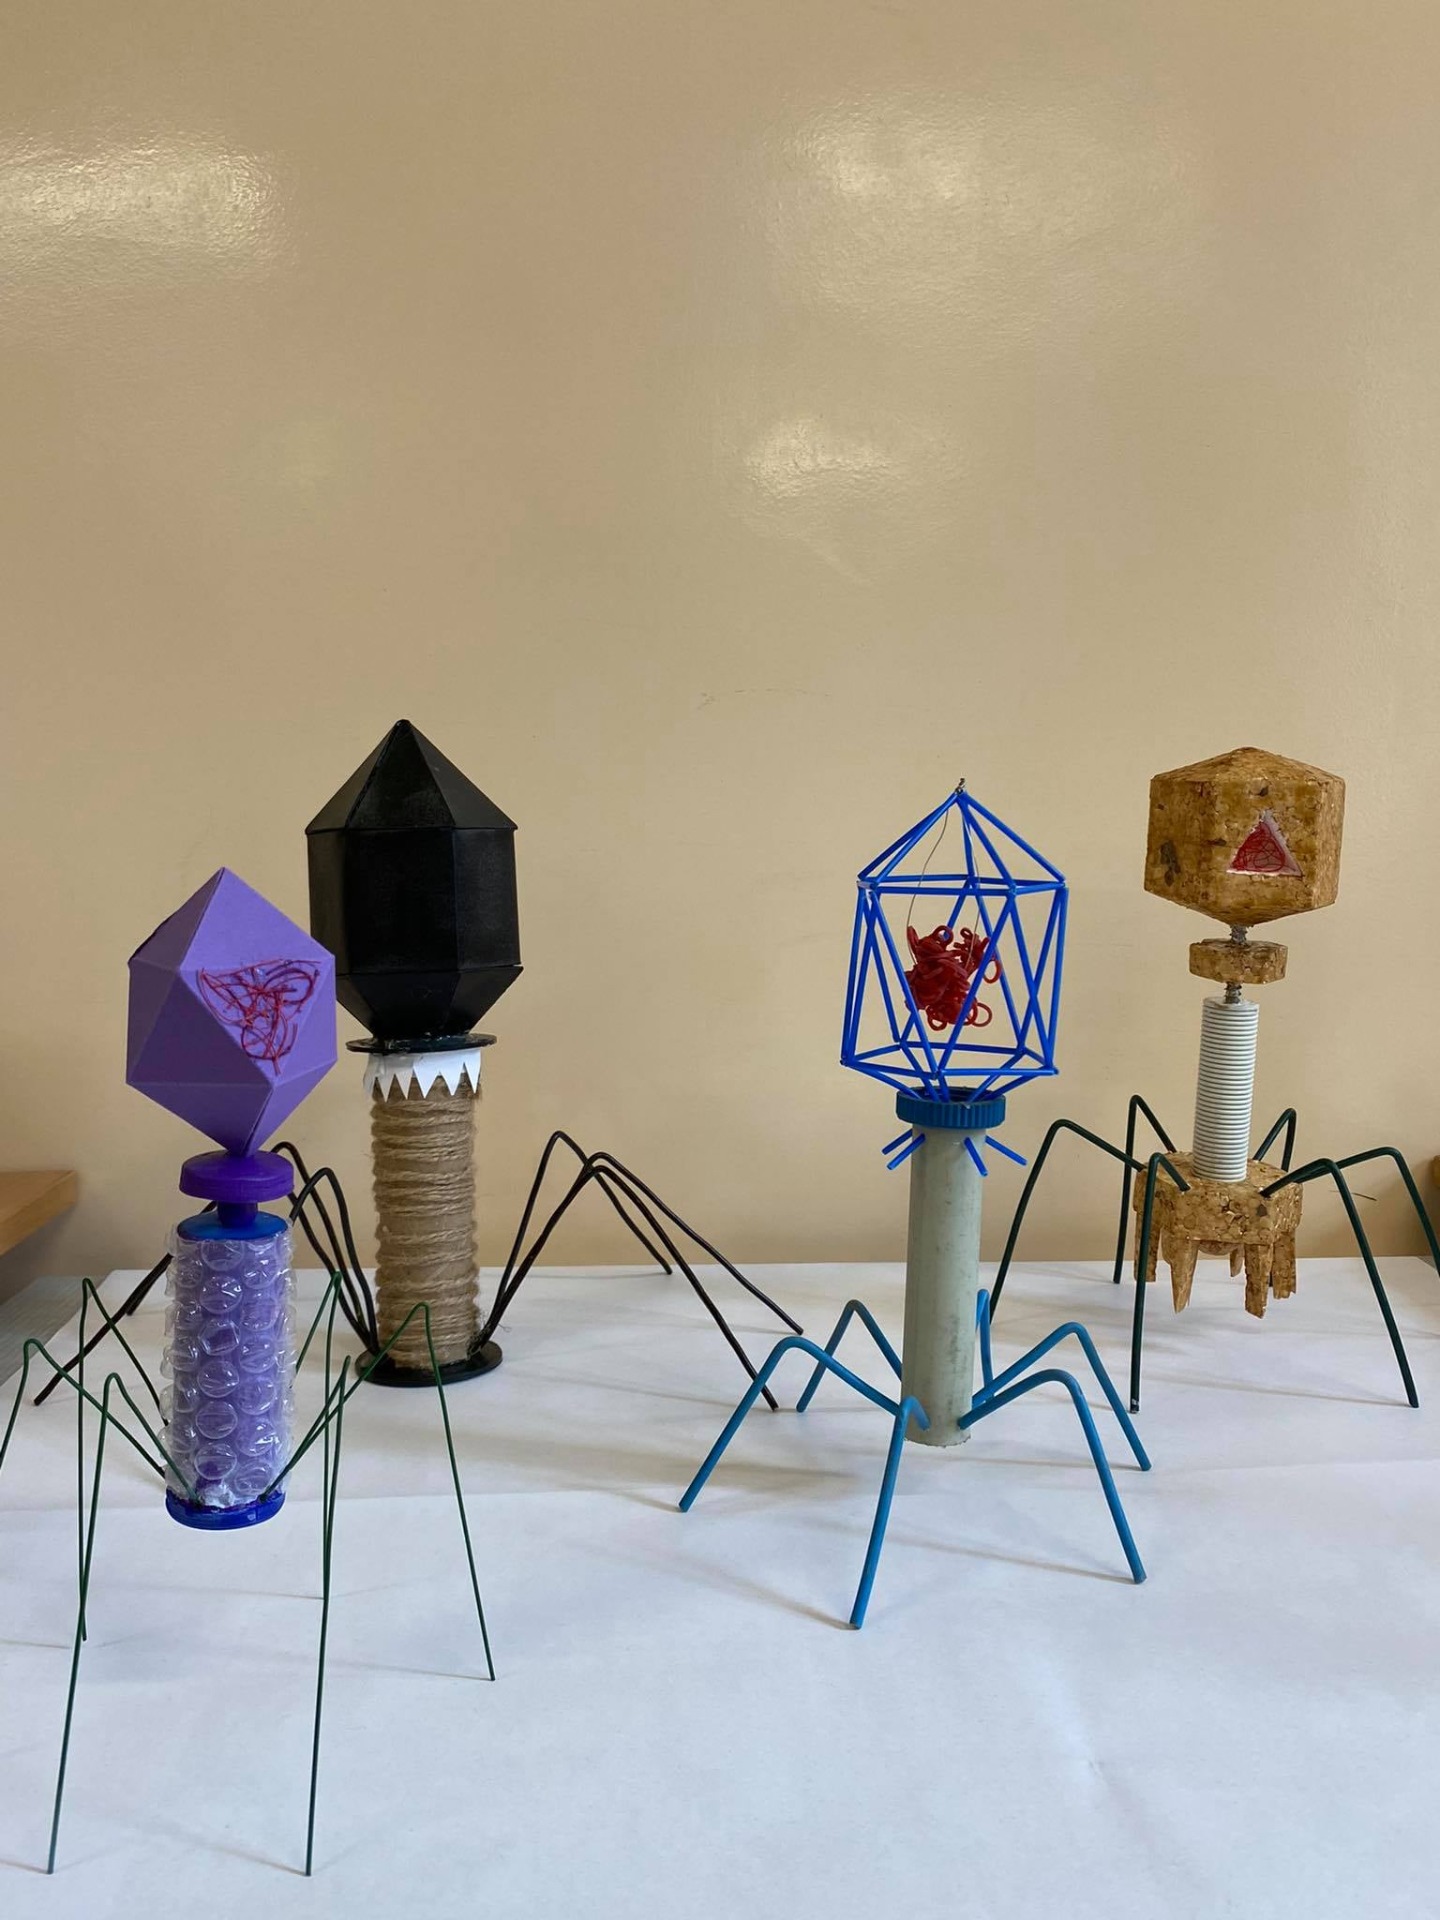 Modele bakteriofagów wykonane przez uczniów.